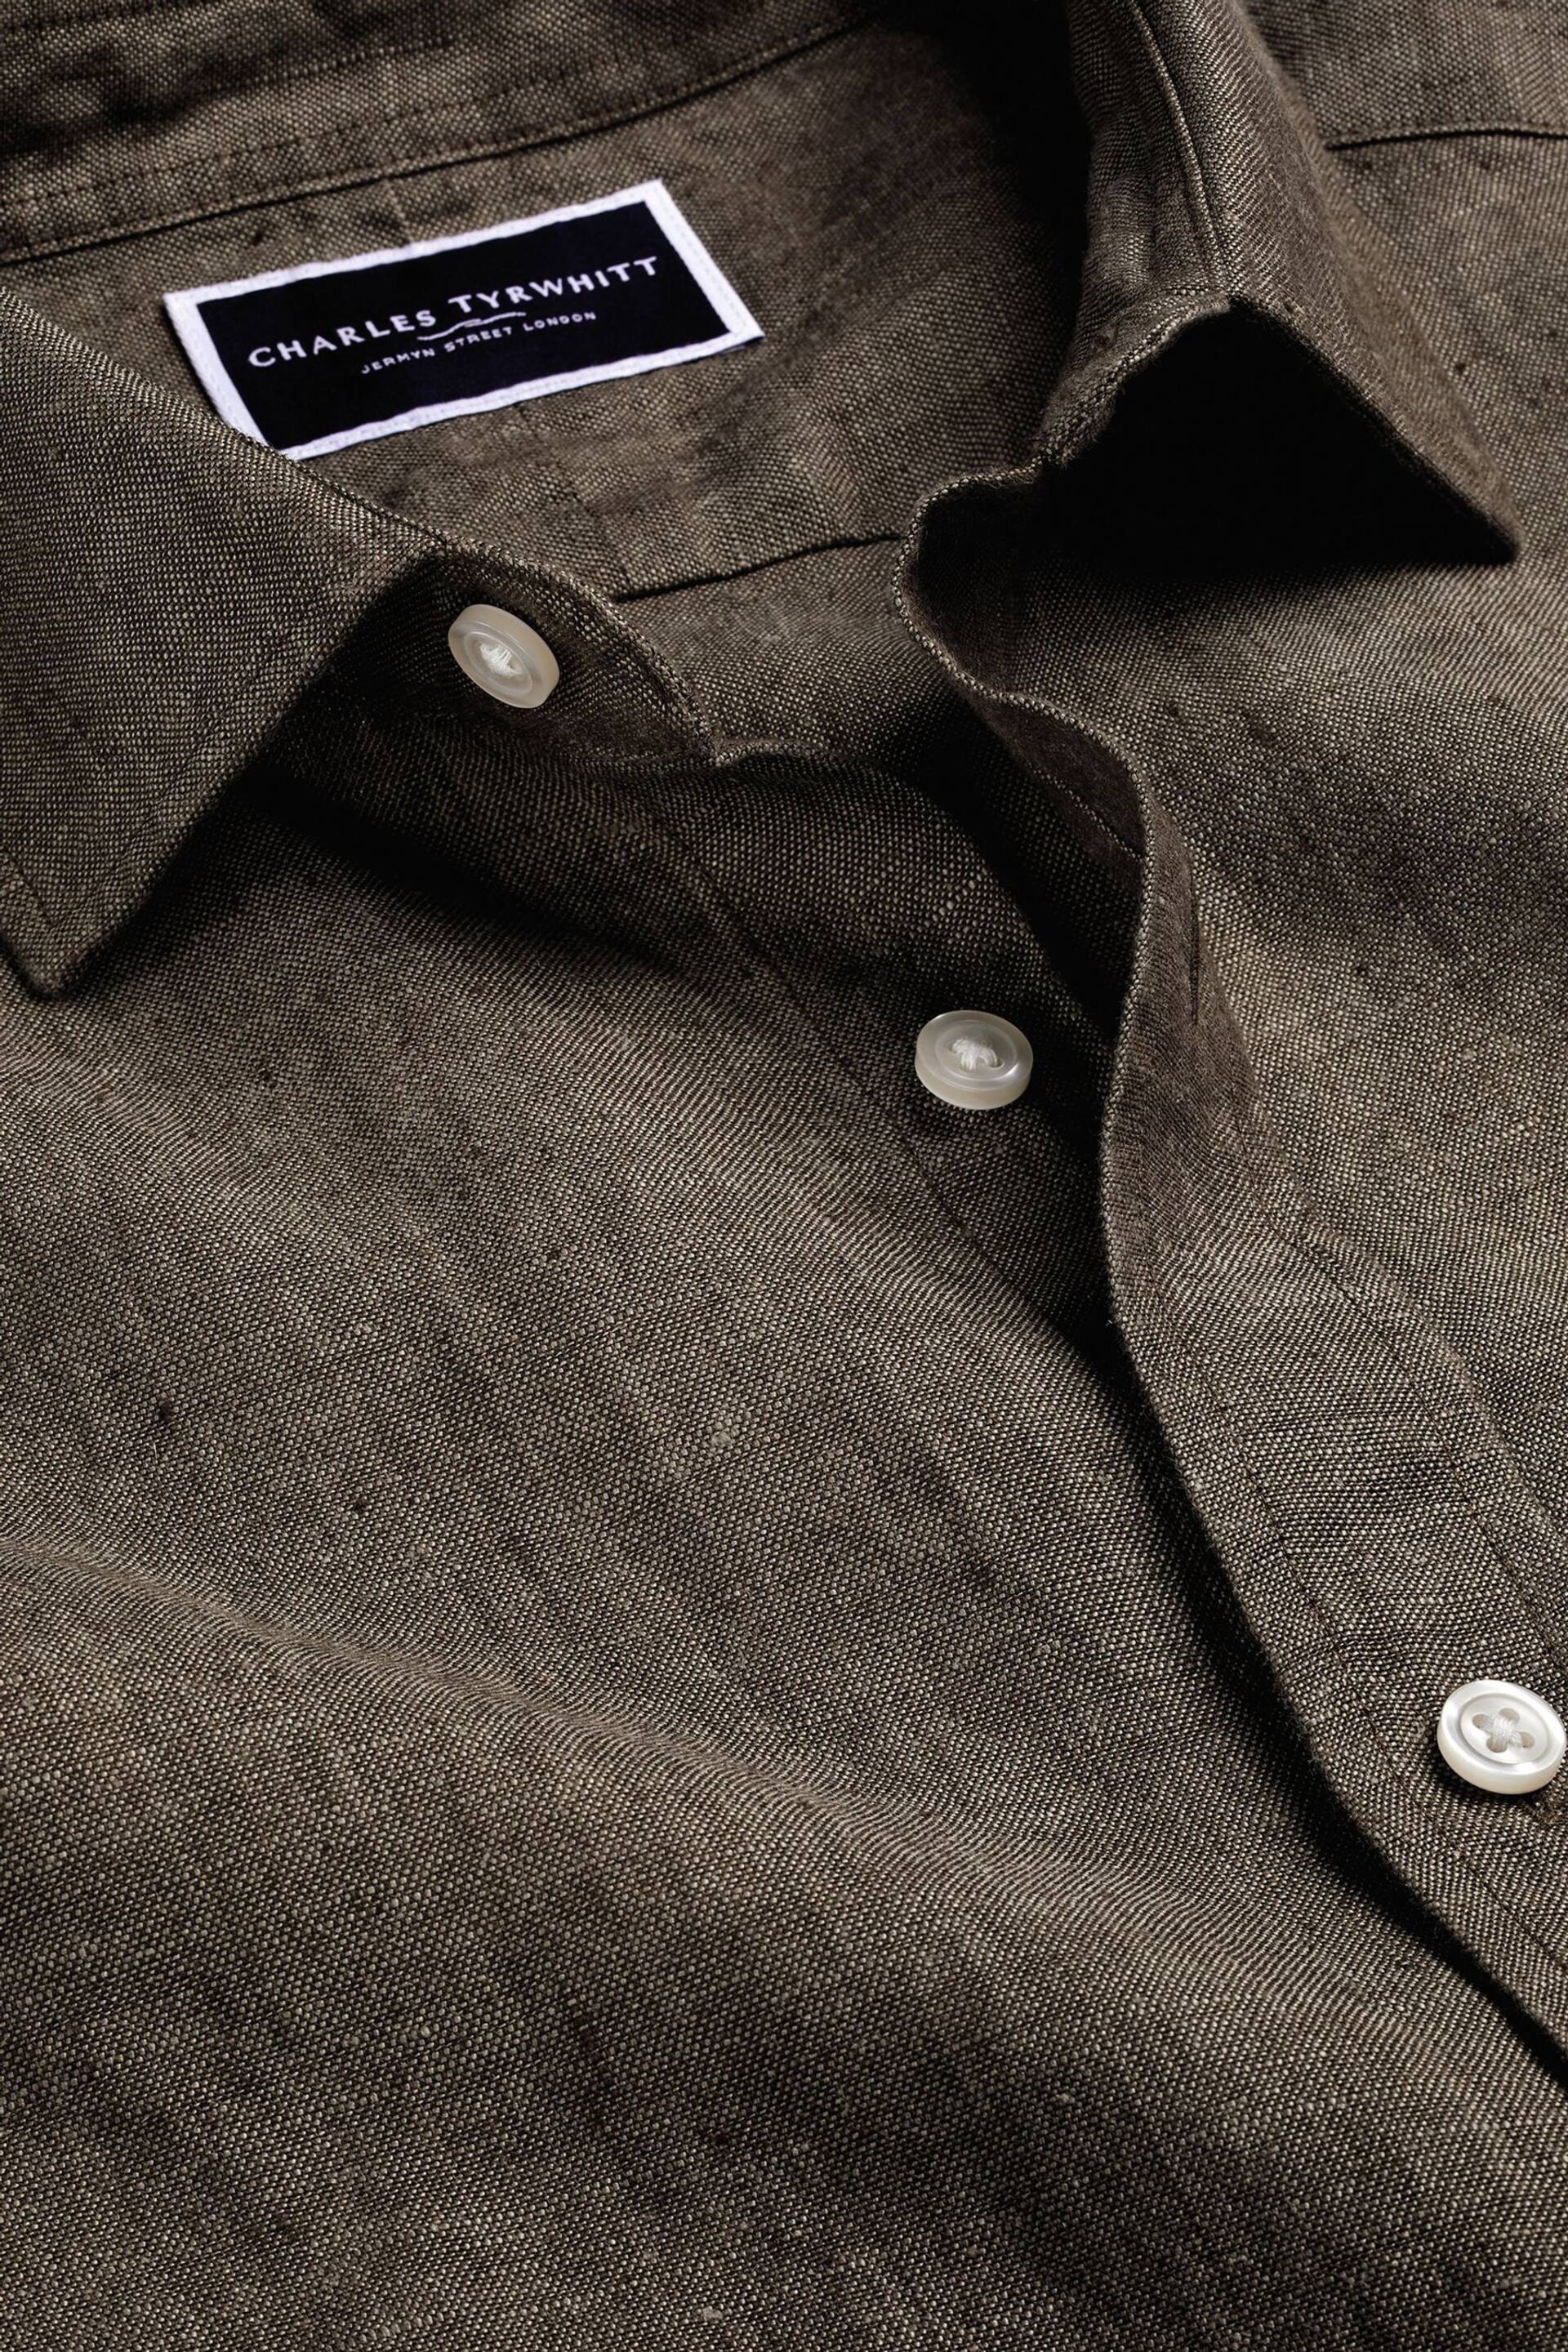 Charles Tyrwhitt Brown/Cream Slim Fit Plain Short Sleeve Pure Linen Full Sleeves Shirt - Image 5 of 6